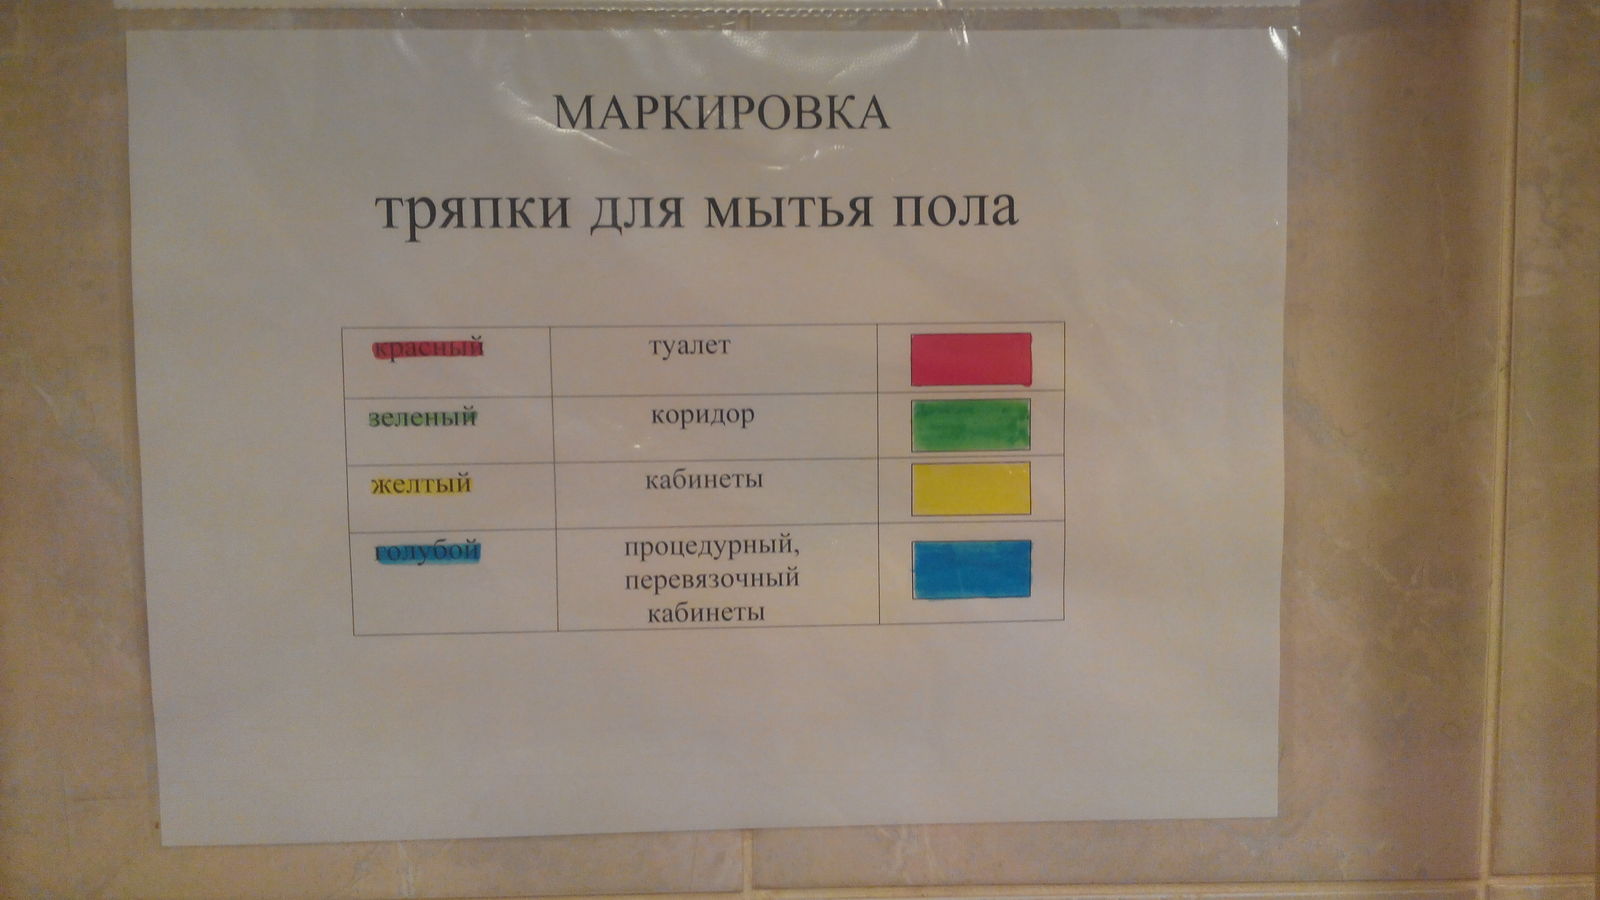 Цветовая маркировка уборочного инвентаря в школе по САНПИН